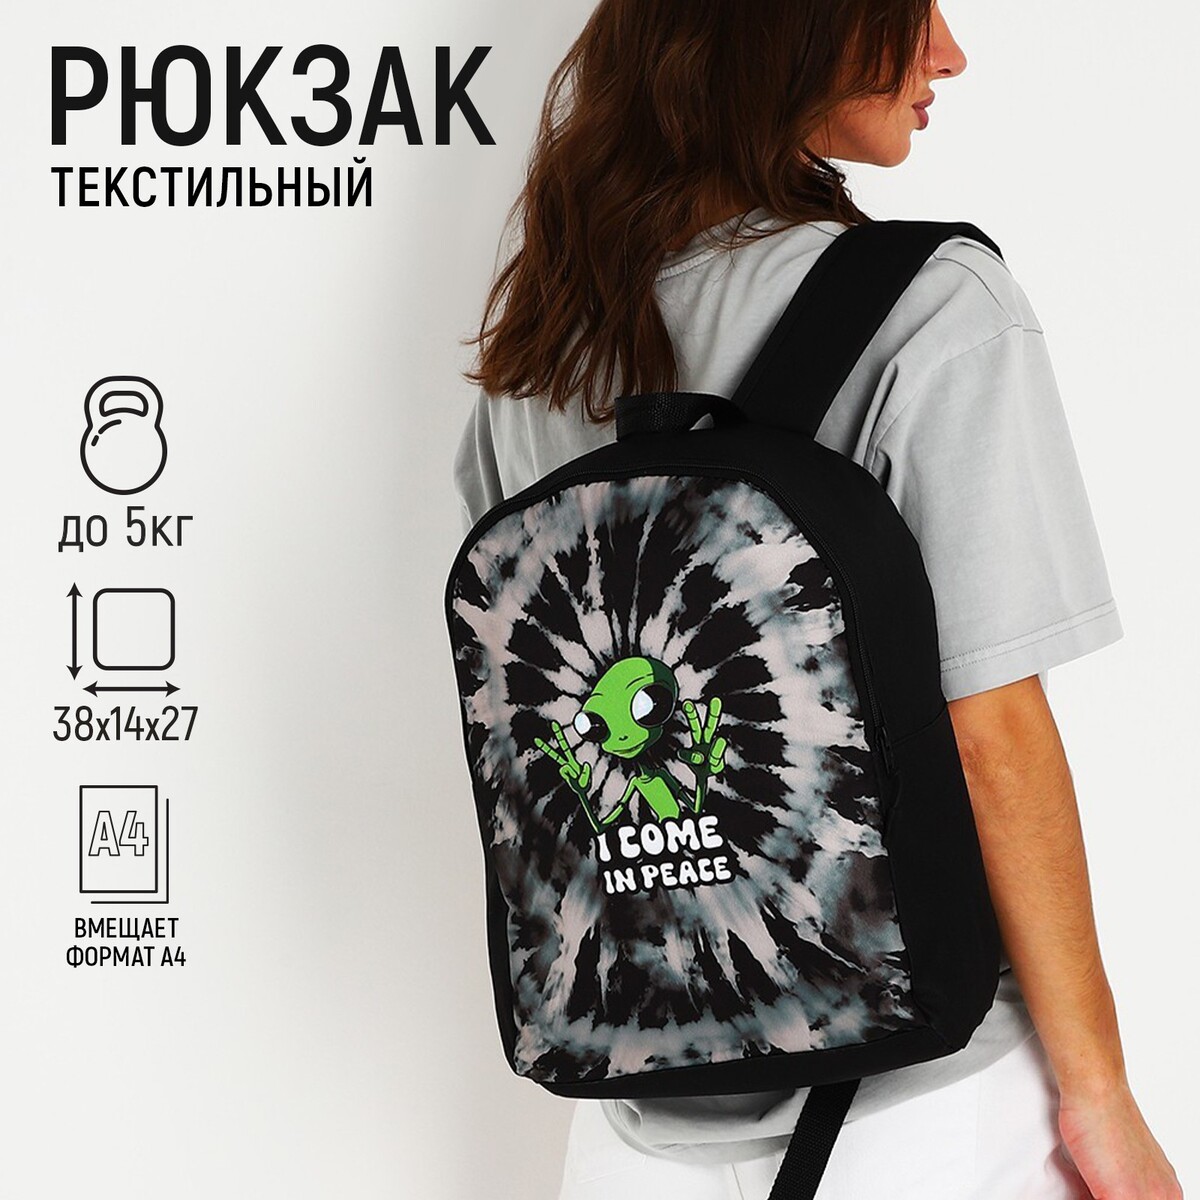 Рюкзак текстильный инопланетянин, 38х14х27 см, цвет черный рюкзак текстильный аниме глаза 38х14х27 см